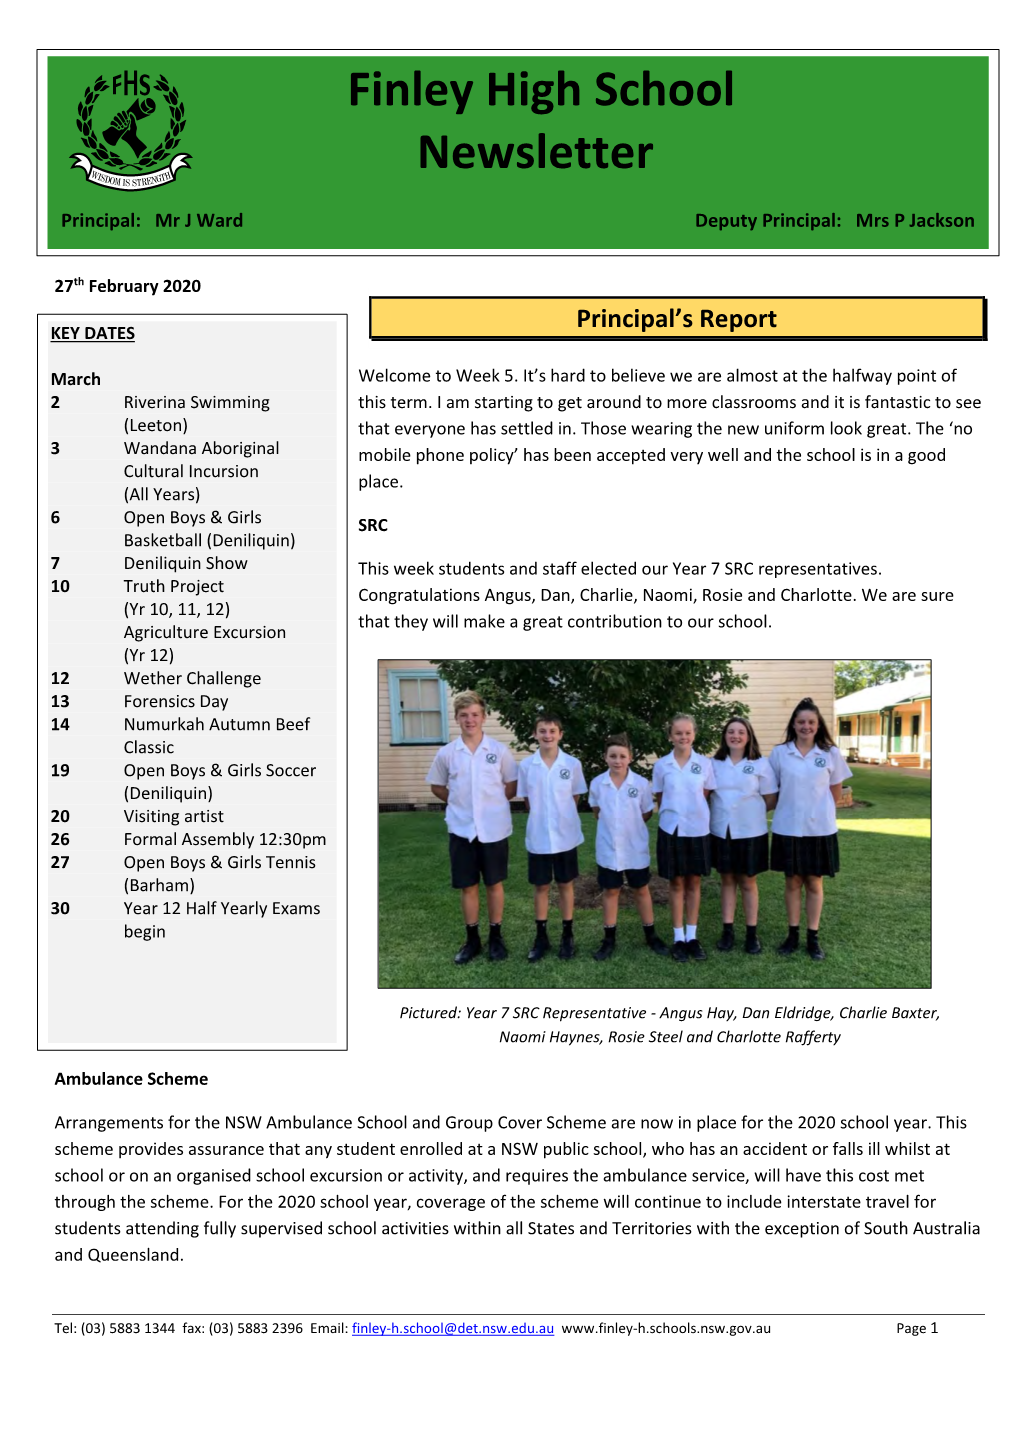 Finley High School Newsletter